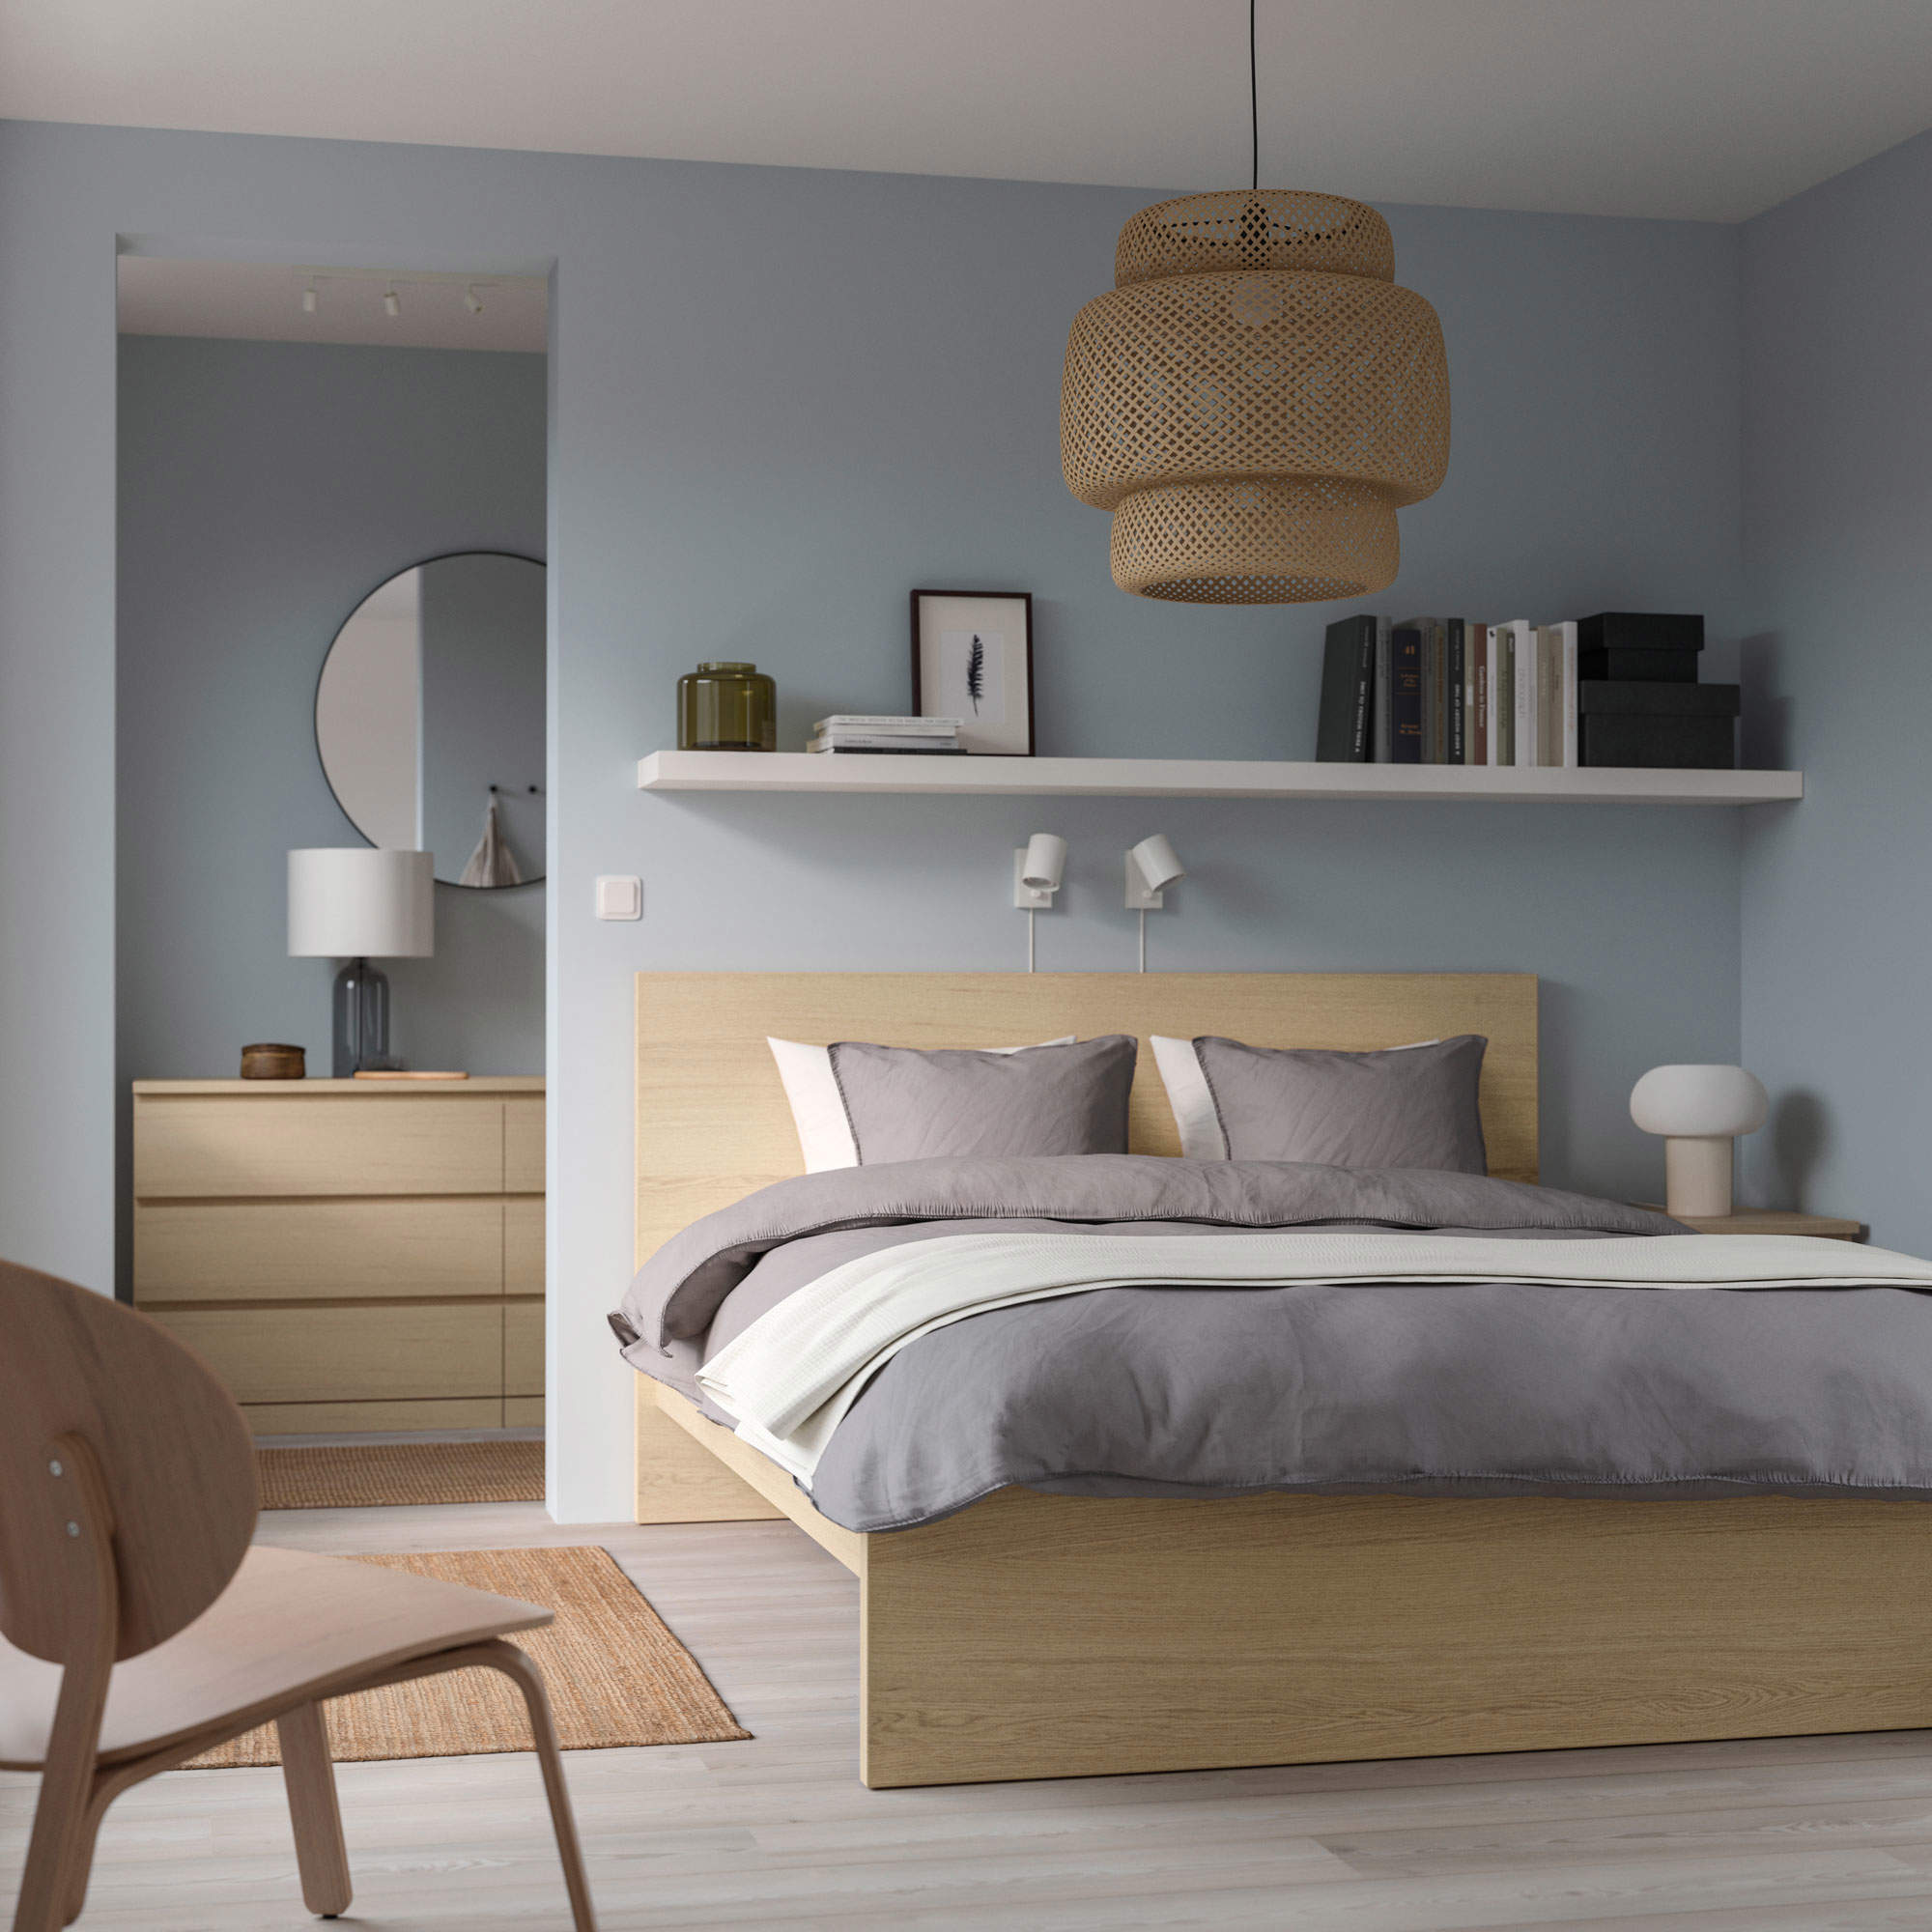 Dormitorio con muebles Malm de IKEA.